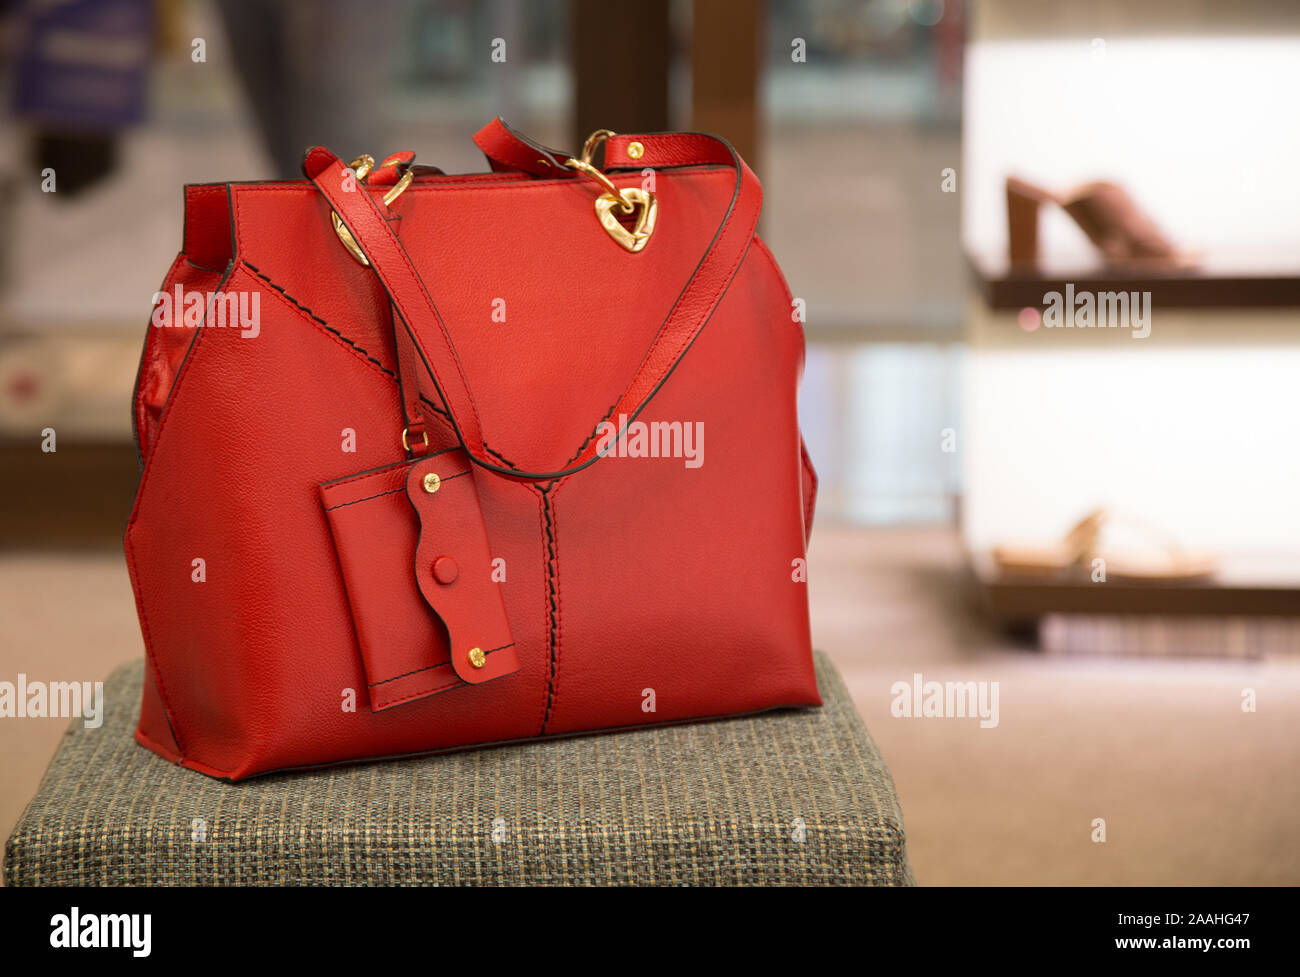 Buy Trendy Hand Bag Online|Best Prices